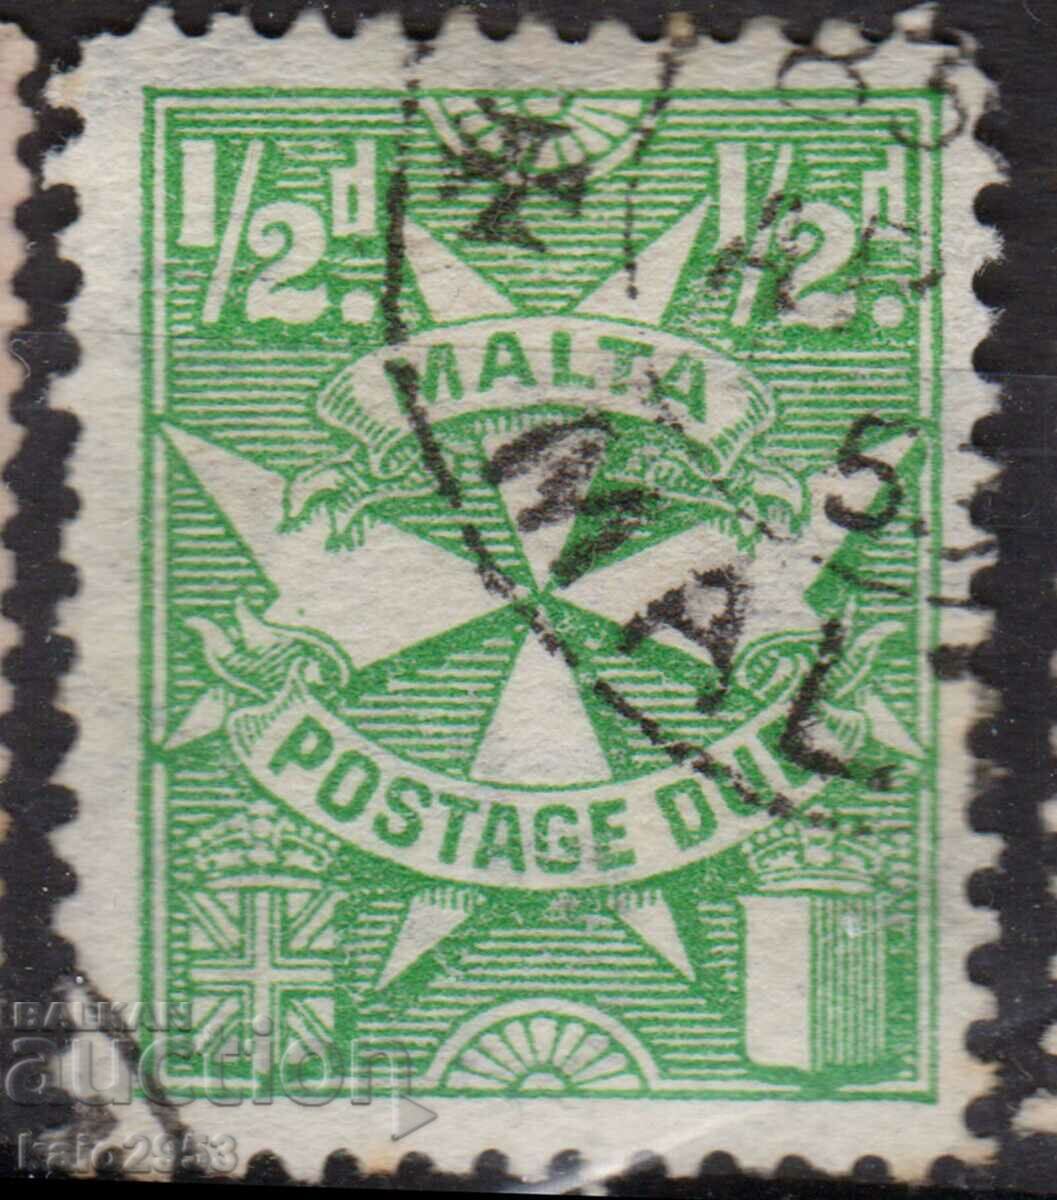 GB/Malta-1947-За доплащане-Малтийски кръст,клеймо